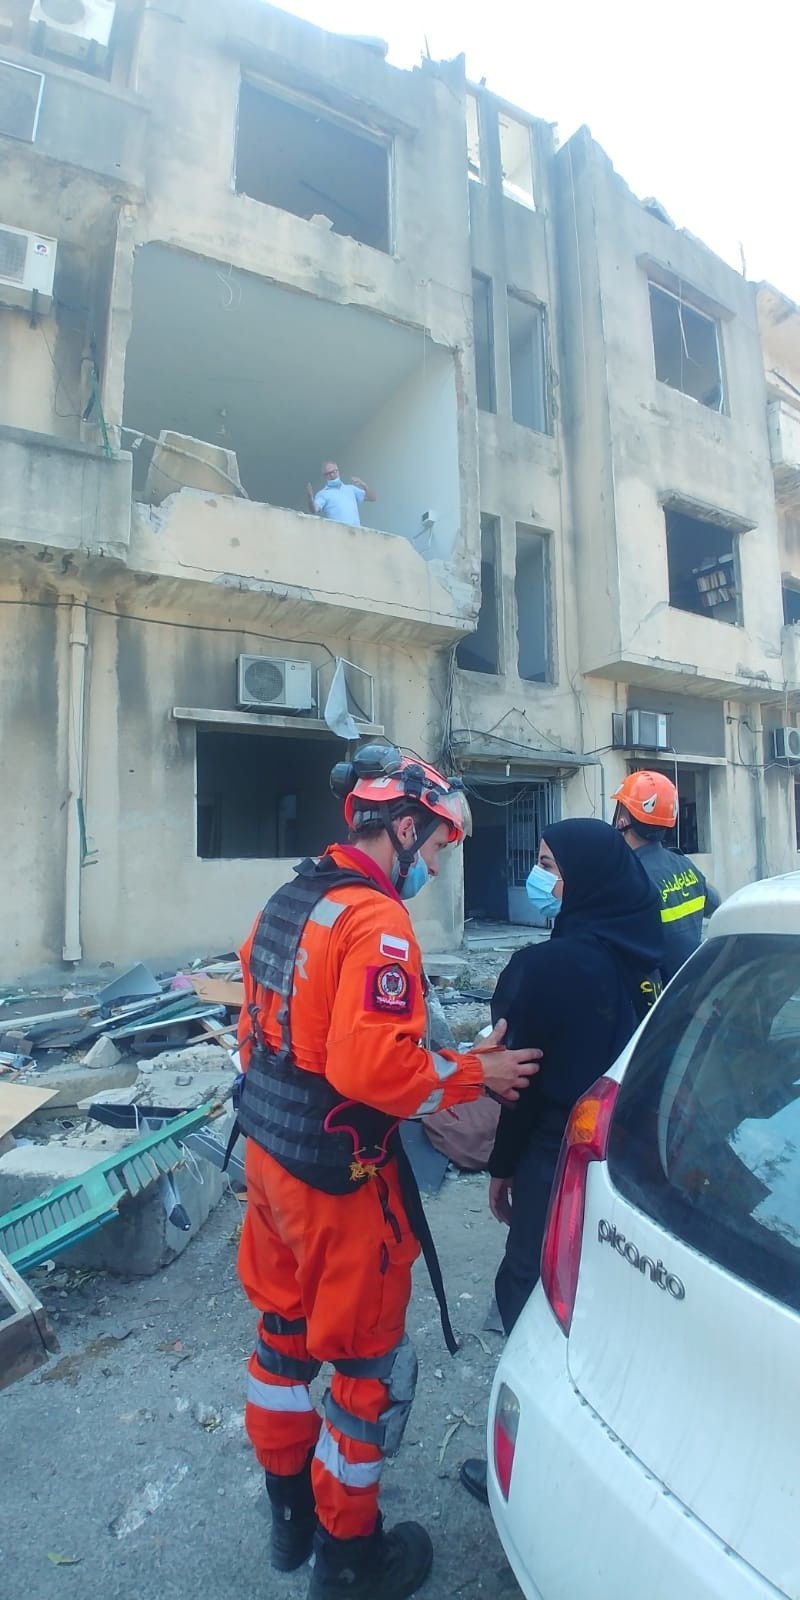 Strażacy z Łodzi wrócili z Bejrutu. Po wybuchu pomagali przeszukiwać ruiny ZDJĘCIA BEJRUTU FILM Z CHWILI WYBUCHU